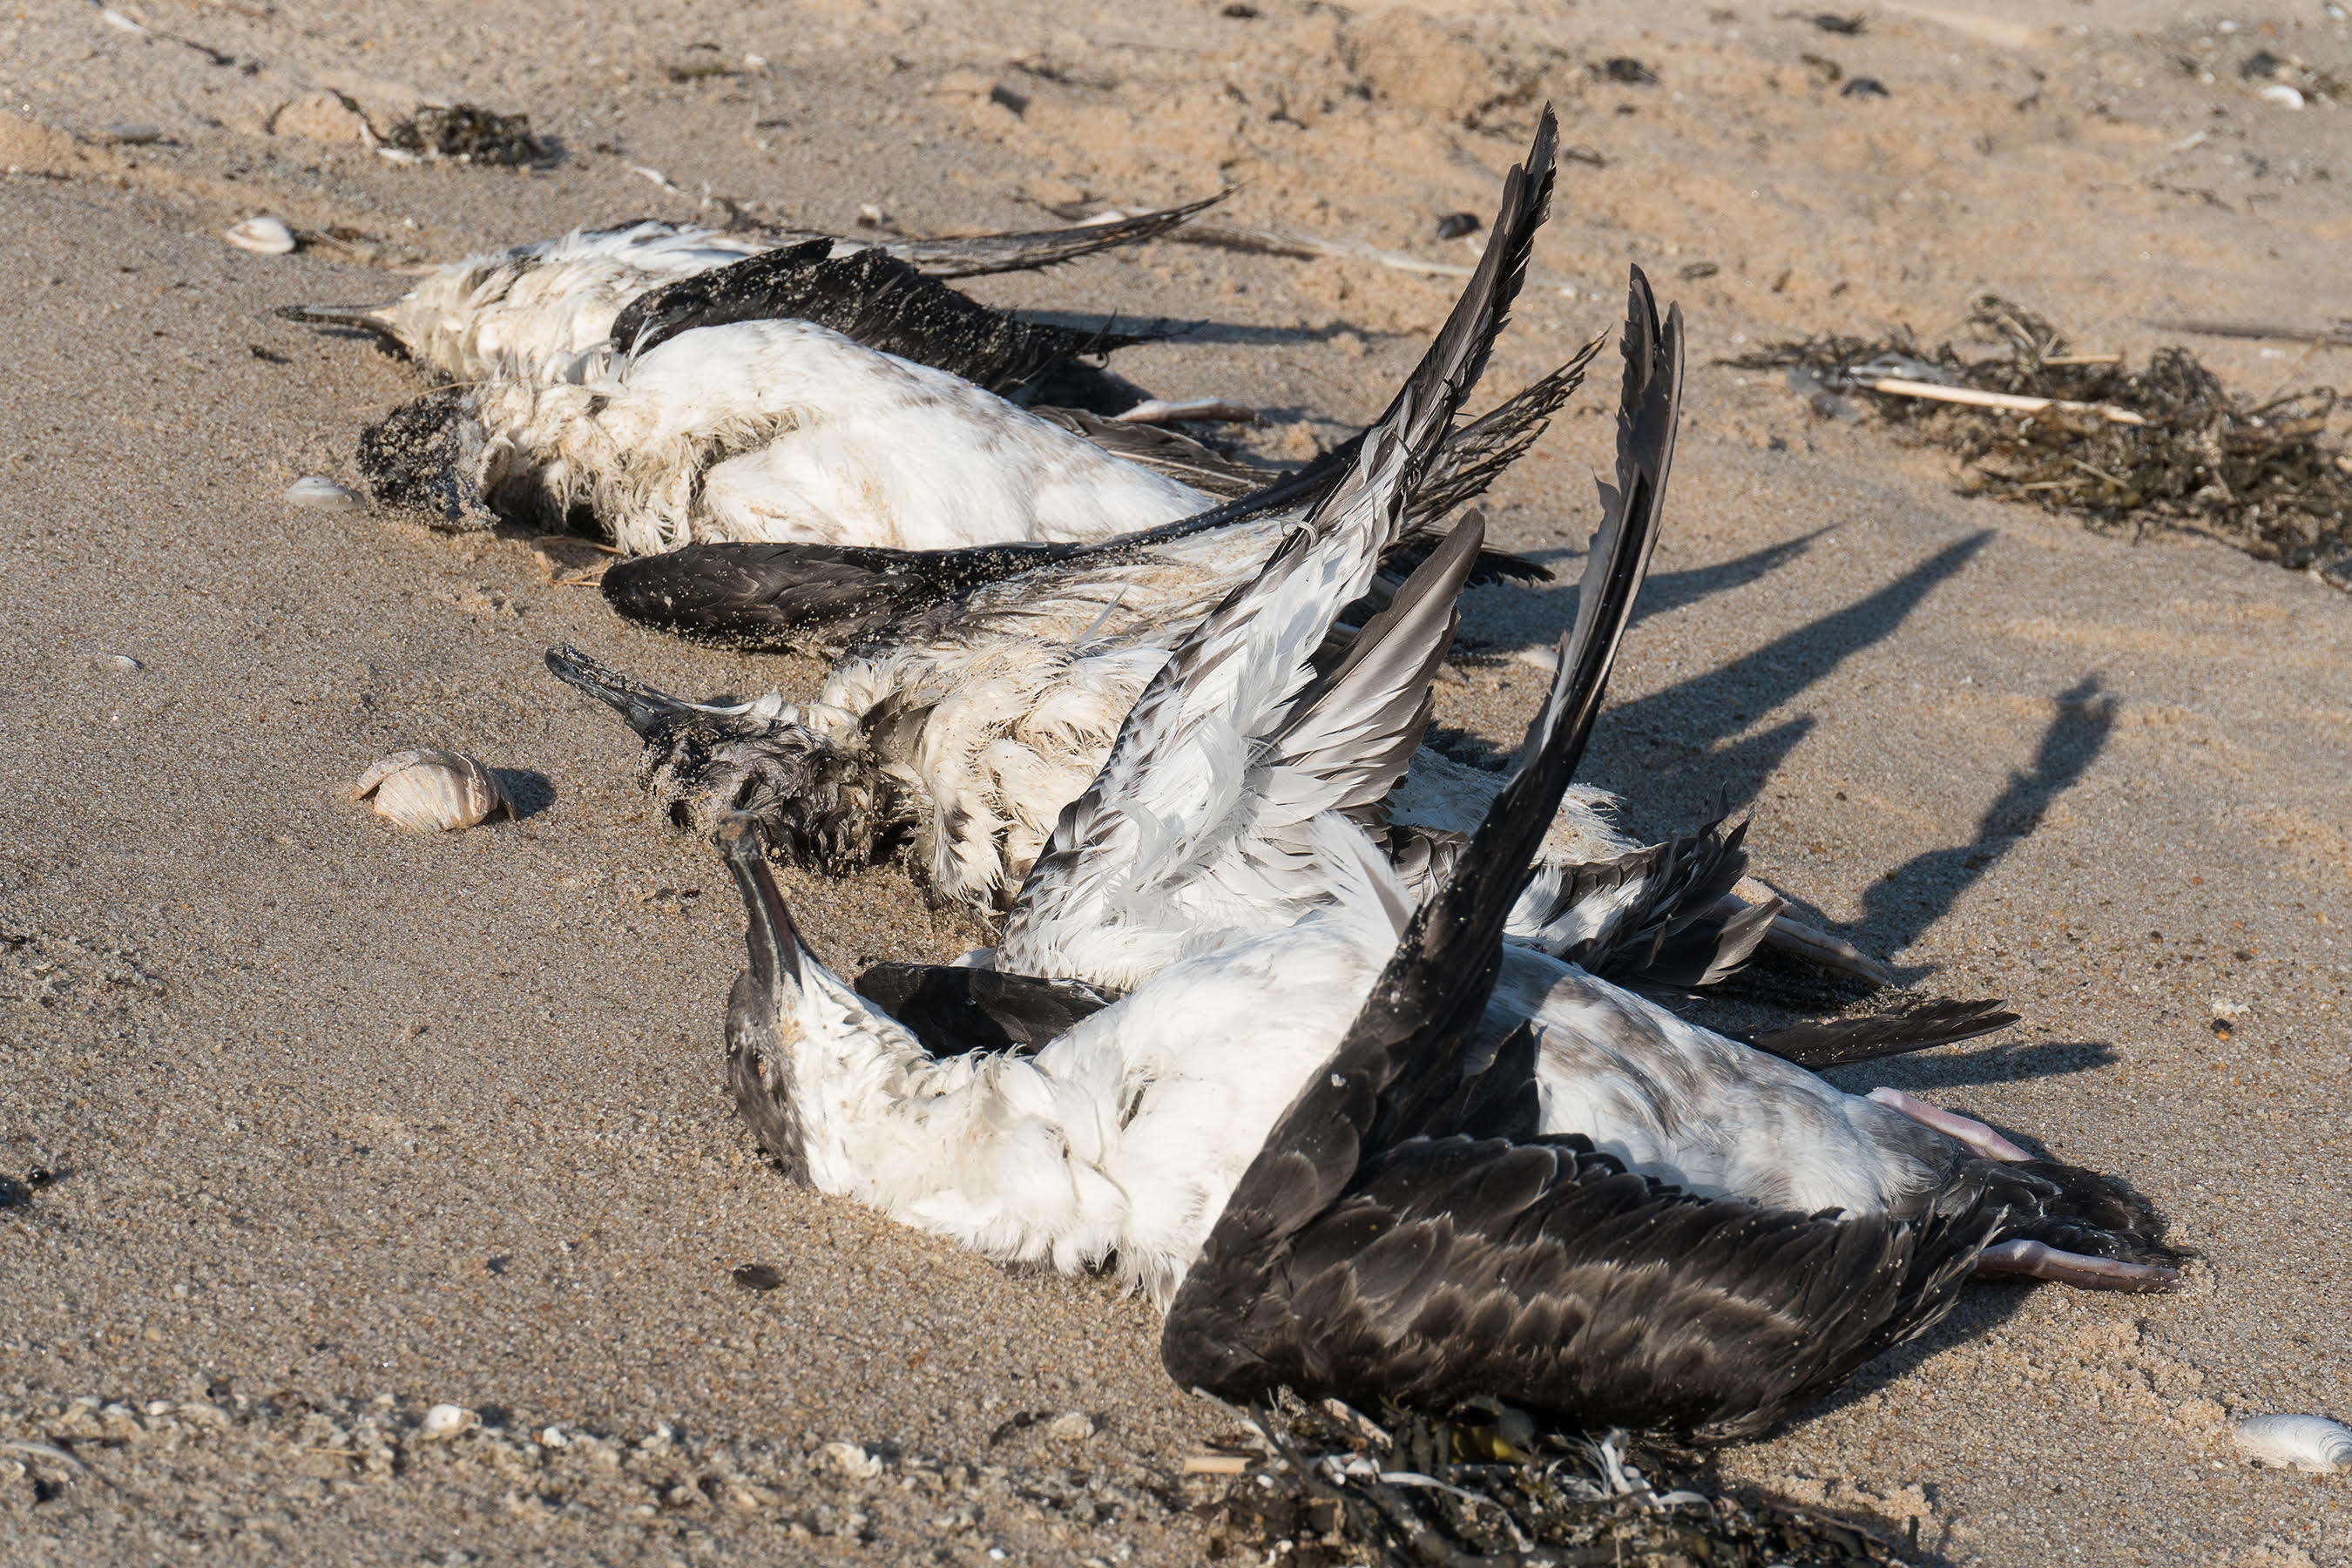 Dead shearwater seabirds on New York beach